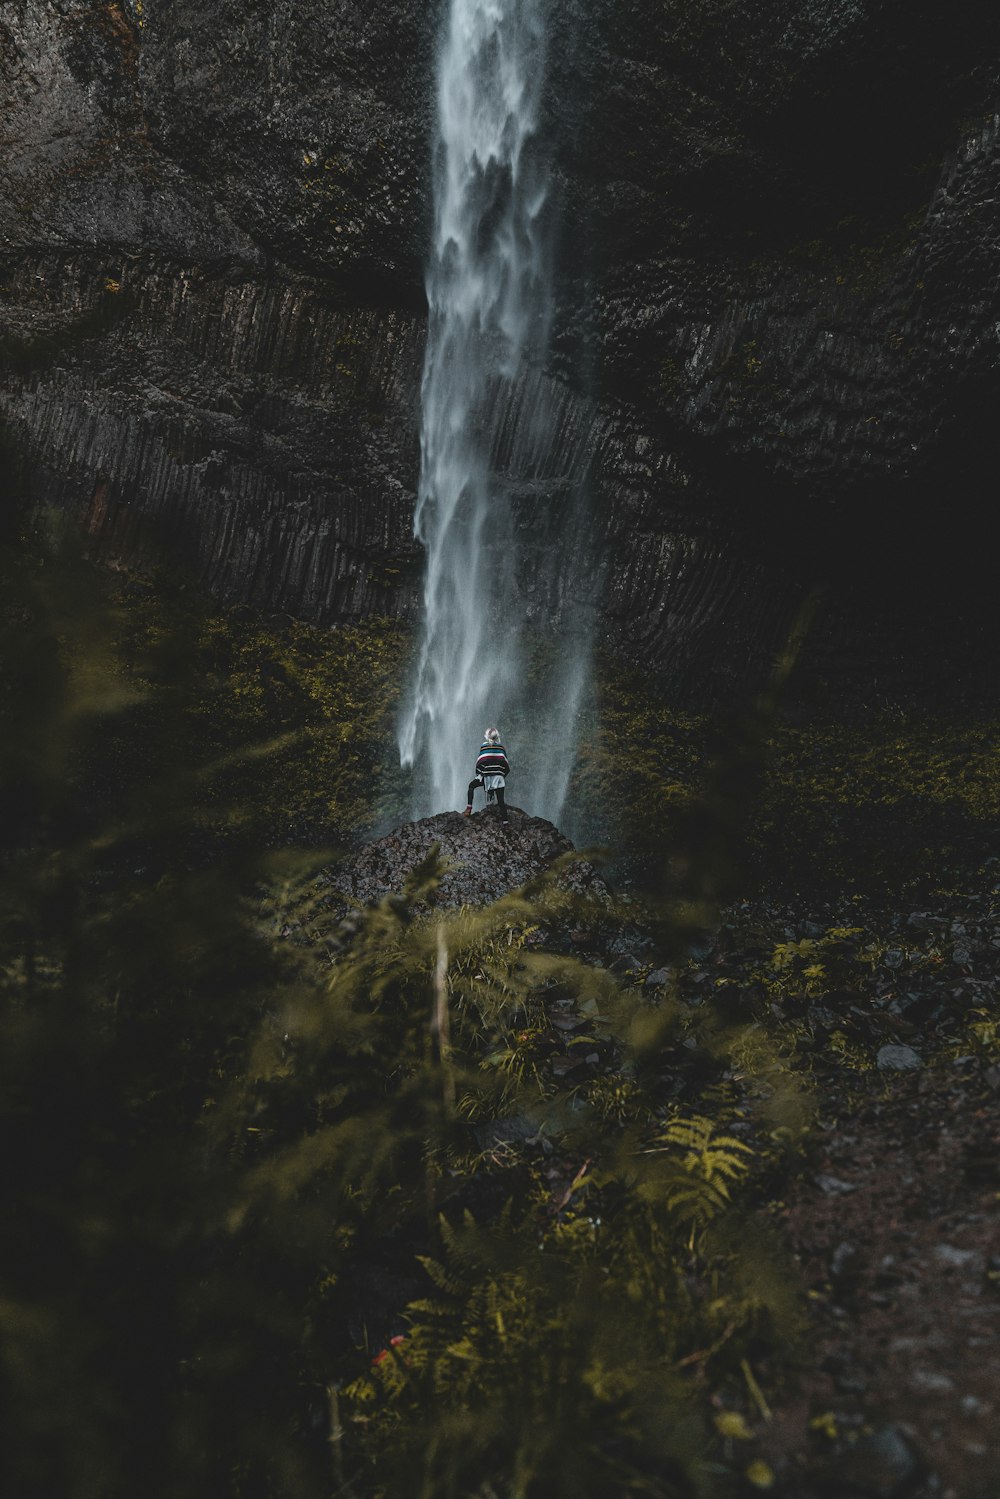 Photographie d’une personne debout faisant face à des chutes d’eau pendant la journée